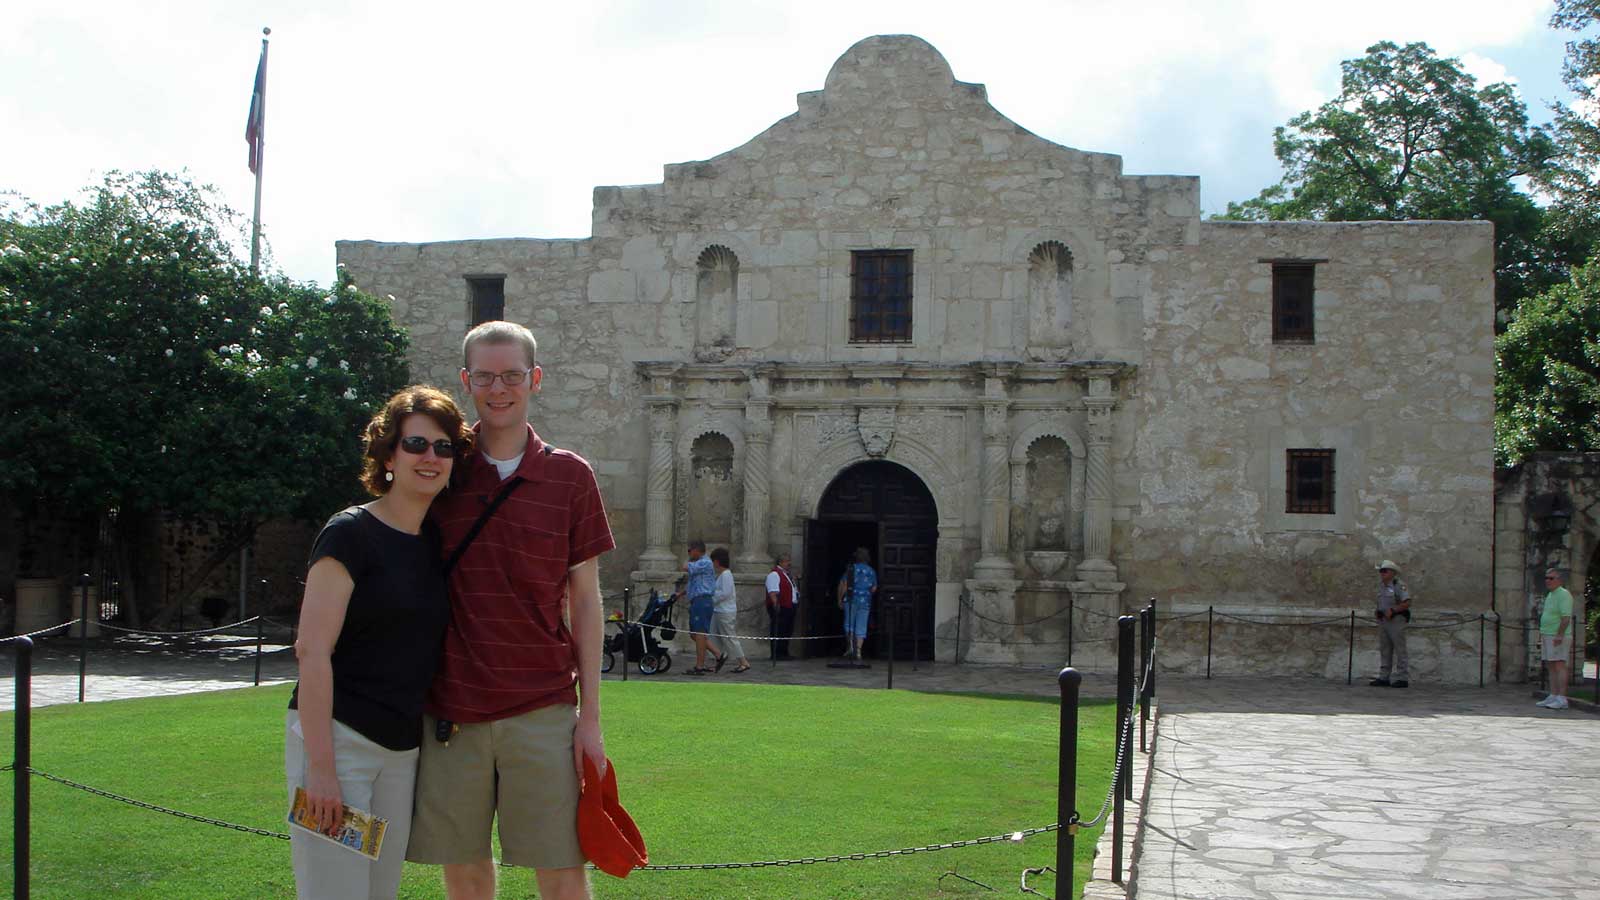 Rebecca and William at the Alamo